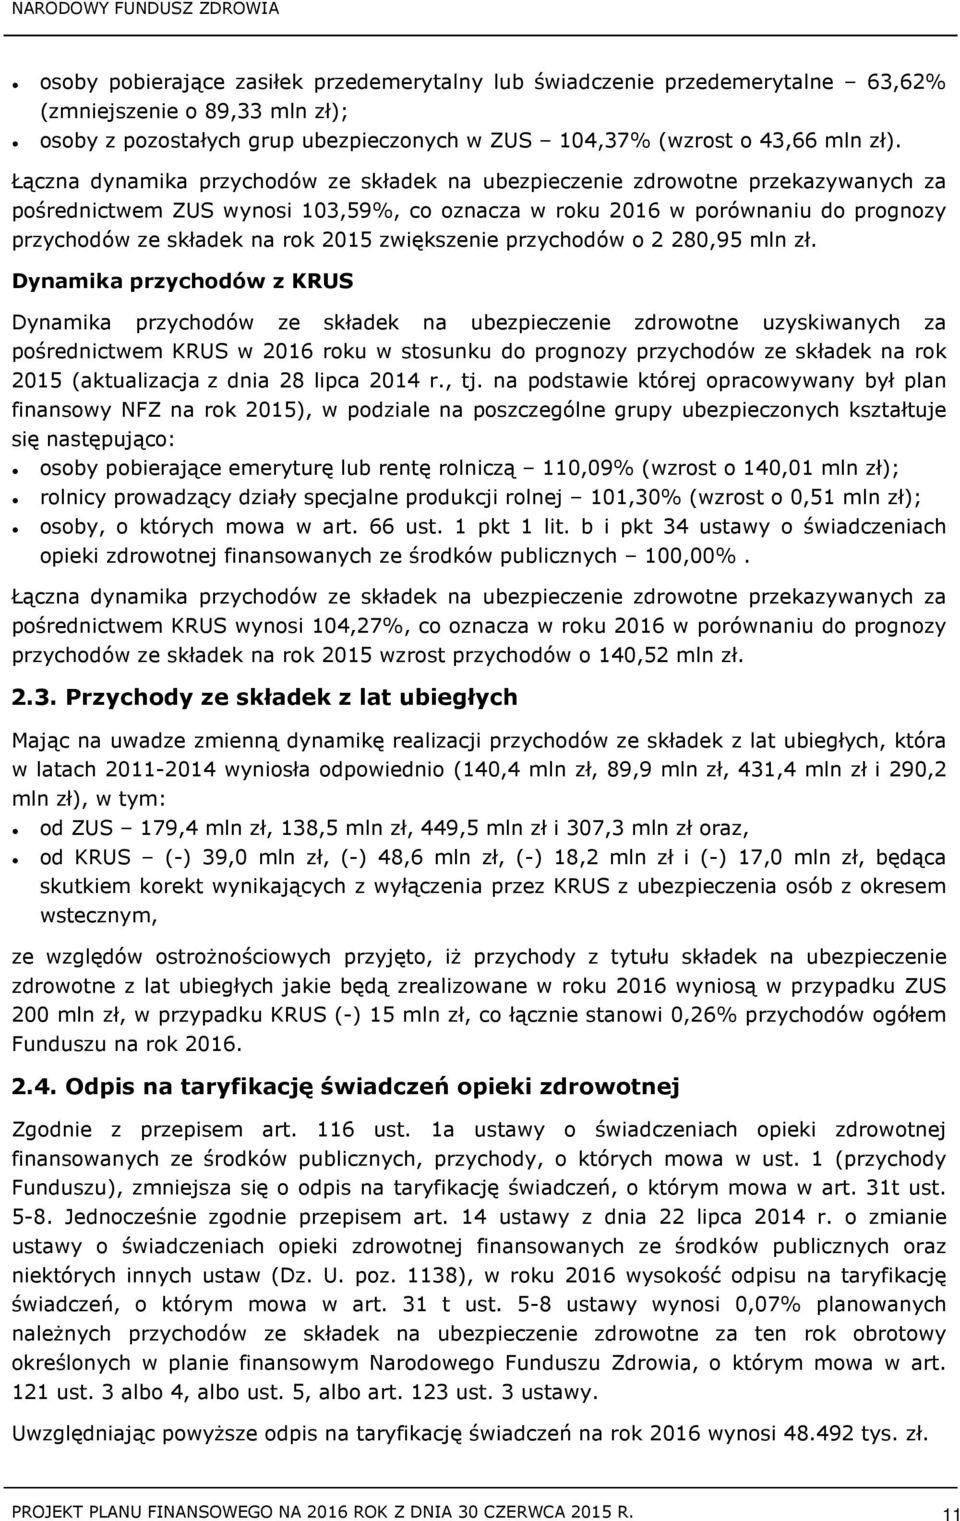 zwiększenie przychodów o 2280,95 mln zł.